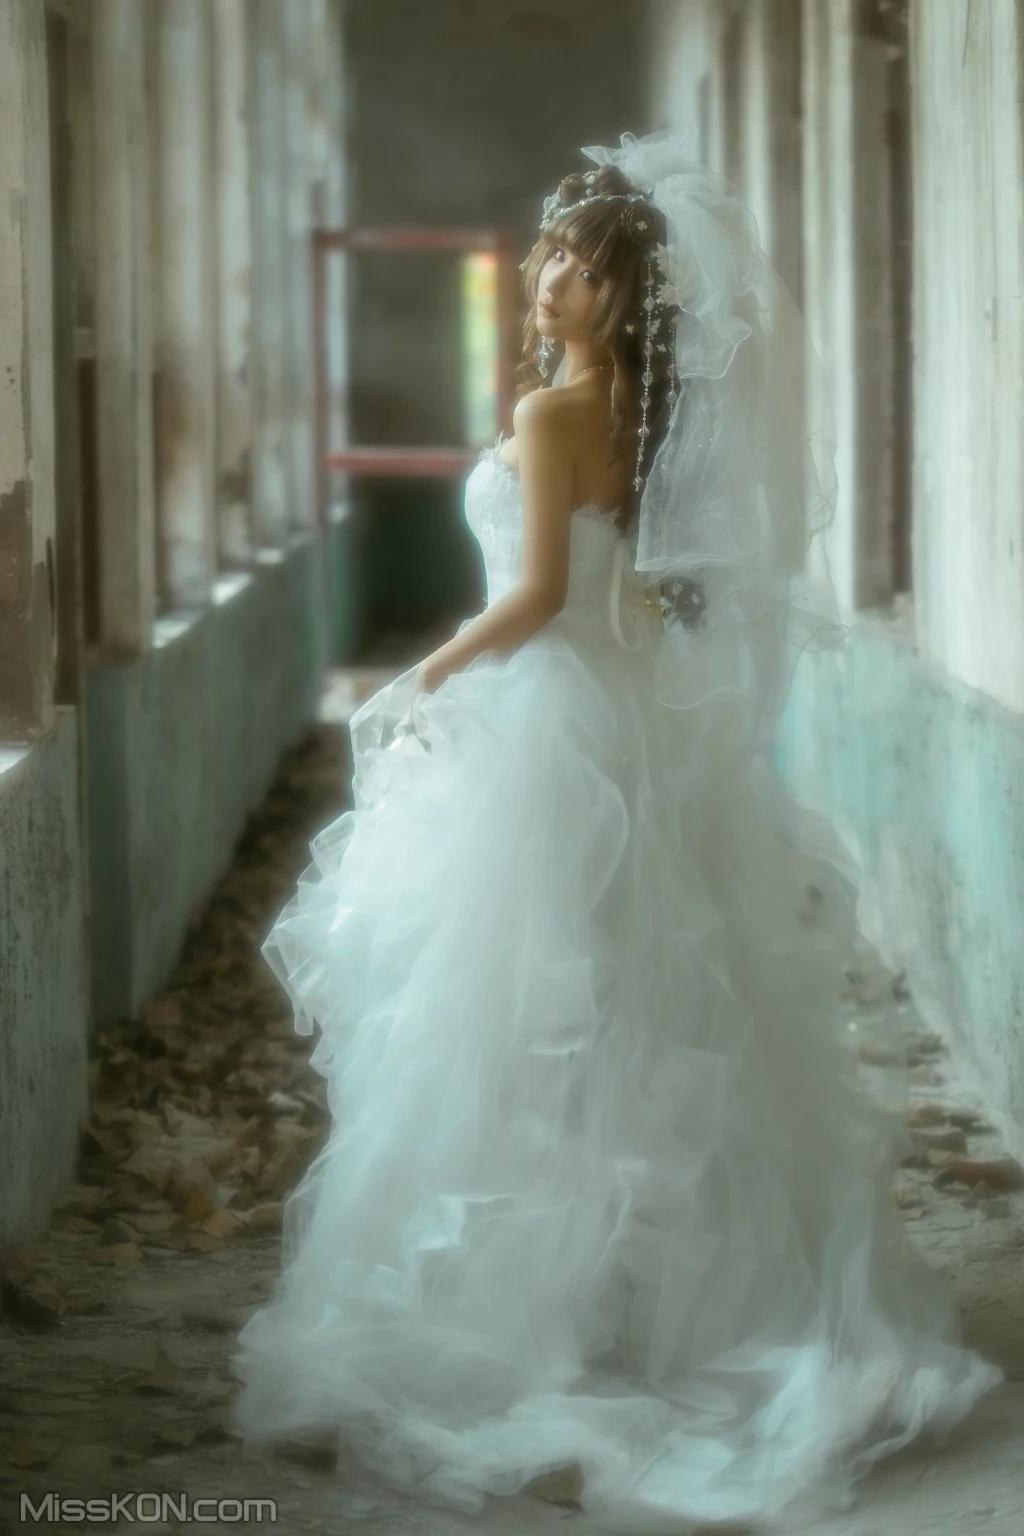 Coser@ foolishmomo (chunmomo): Wedding dress